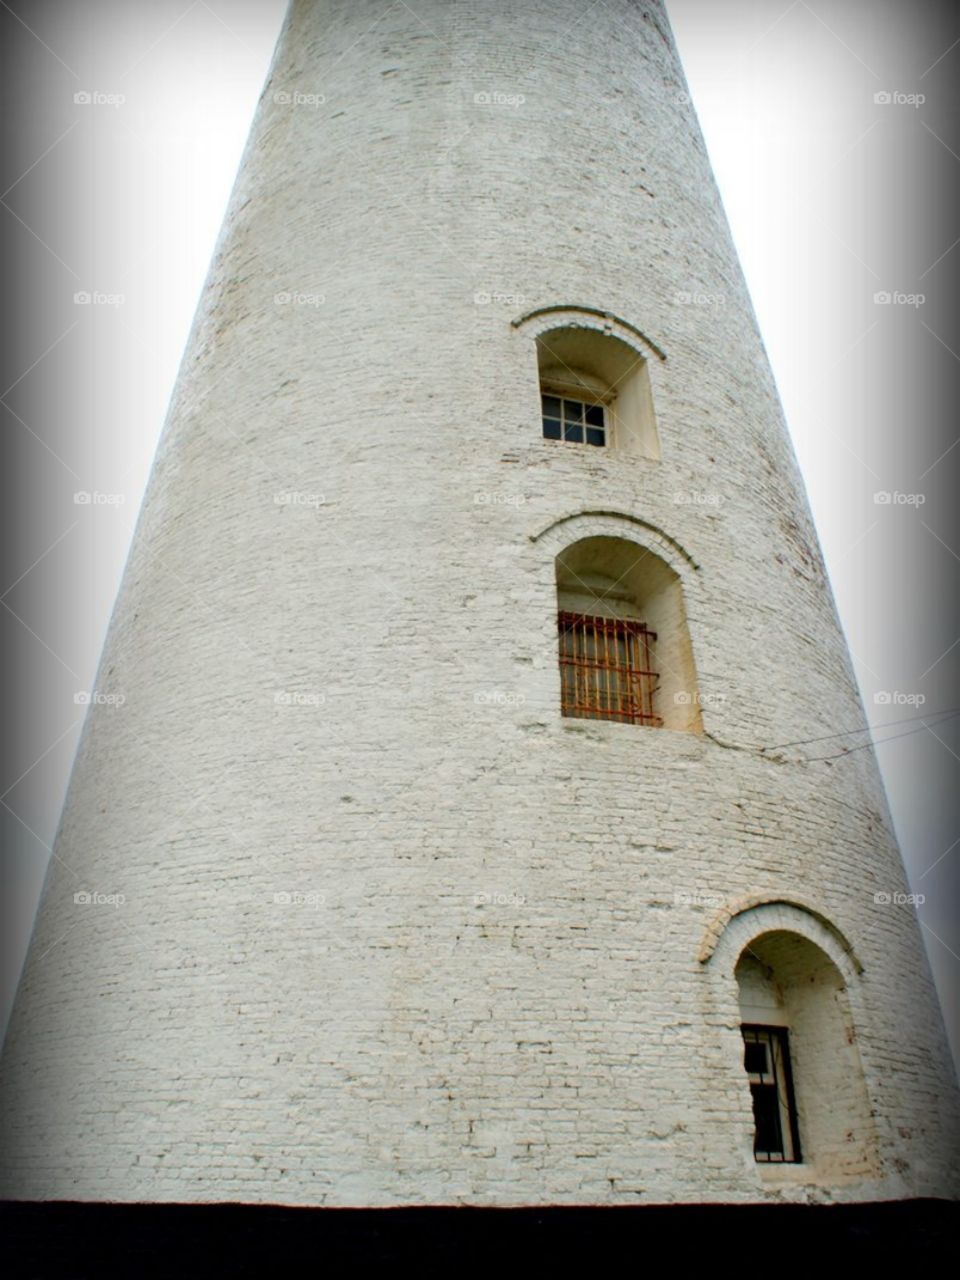 Leesowe lighthouse